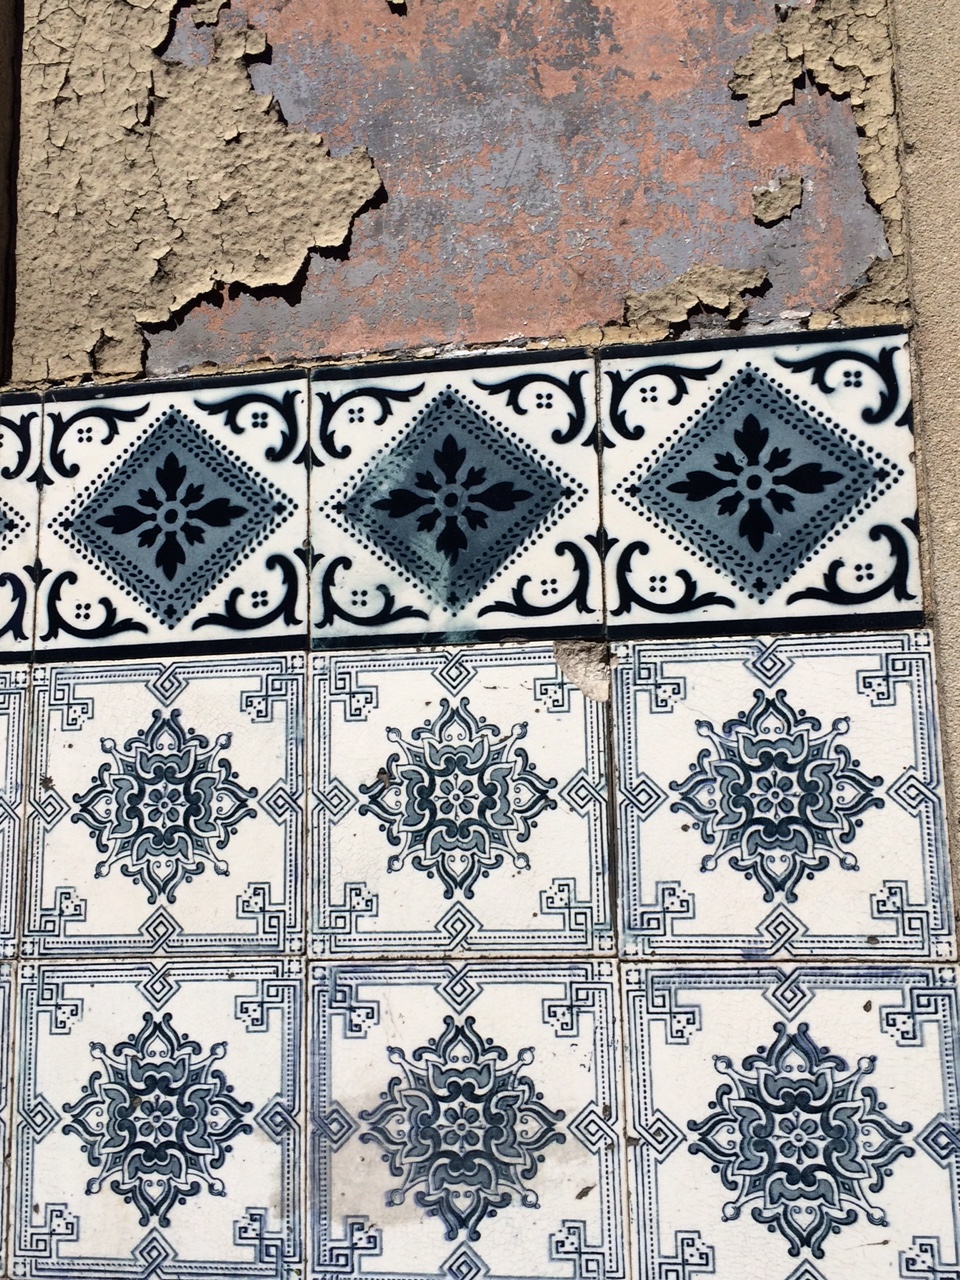 lisbonne_juin_2016_azulejos_ceramiques (3)